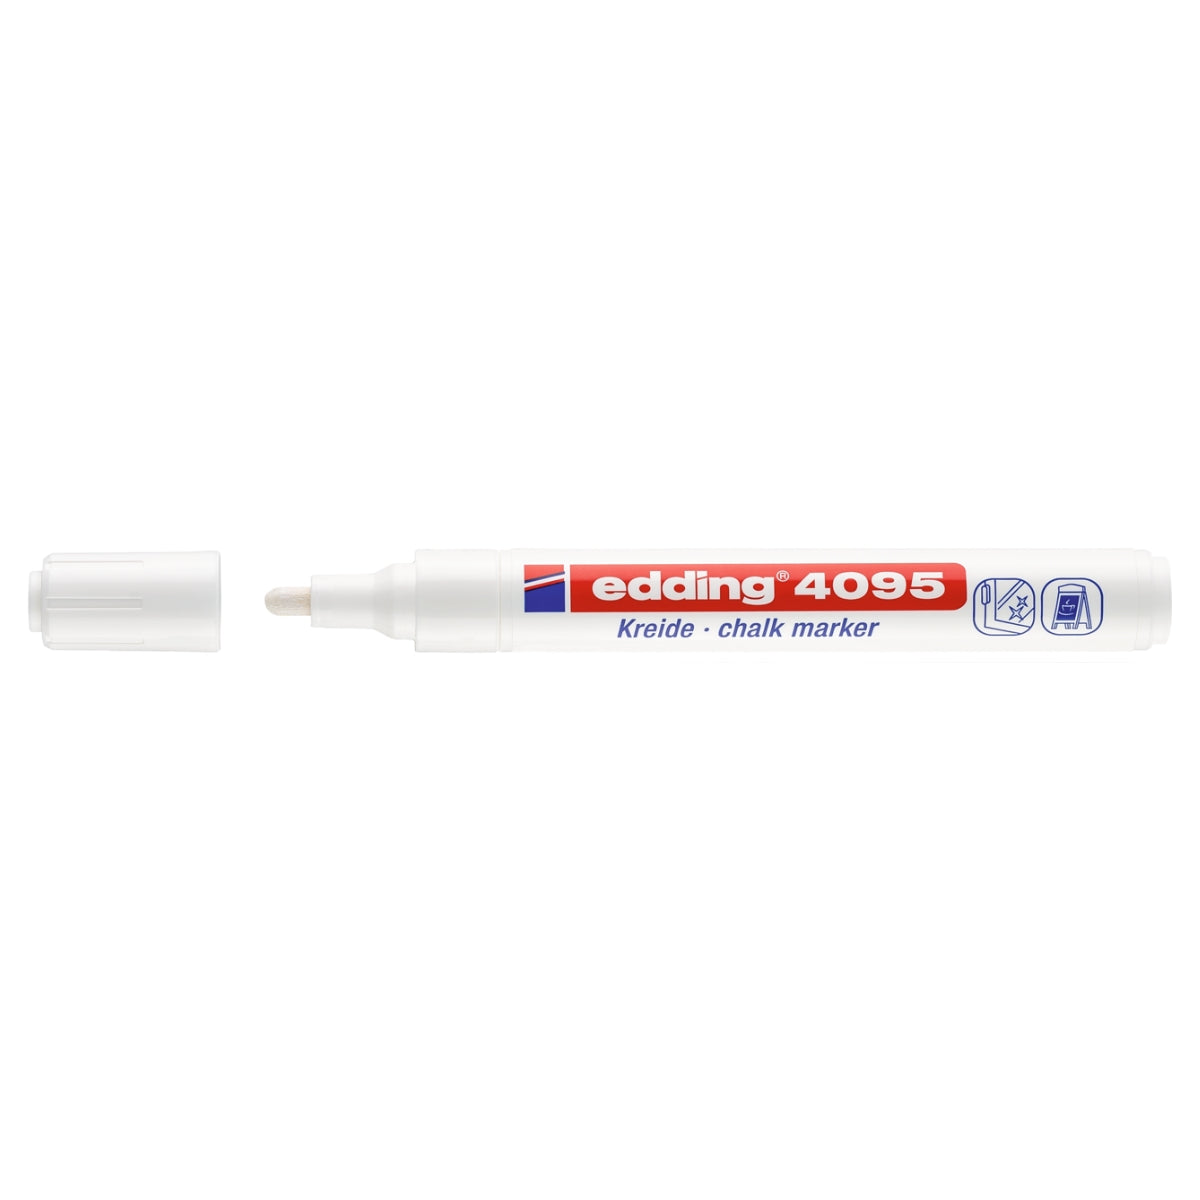 edding 4095 Chalk Marker, 2-3mm Bullet Tip, White